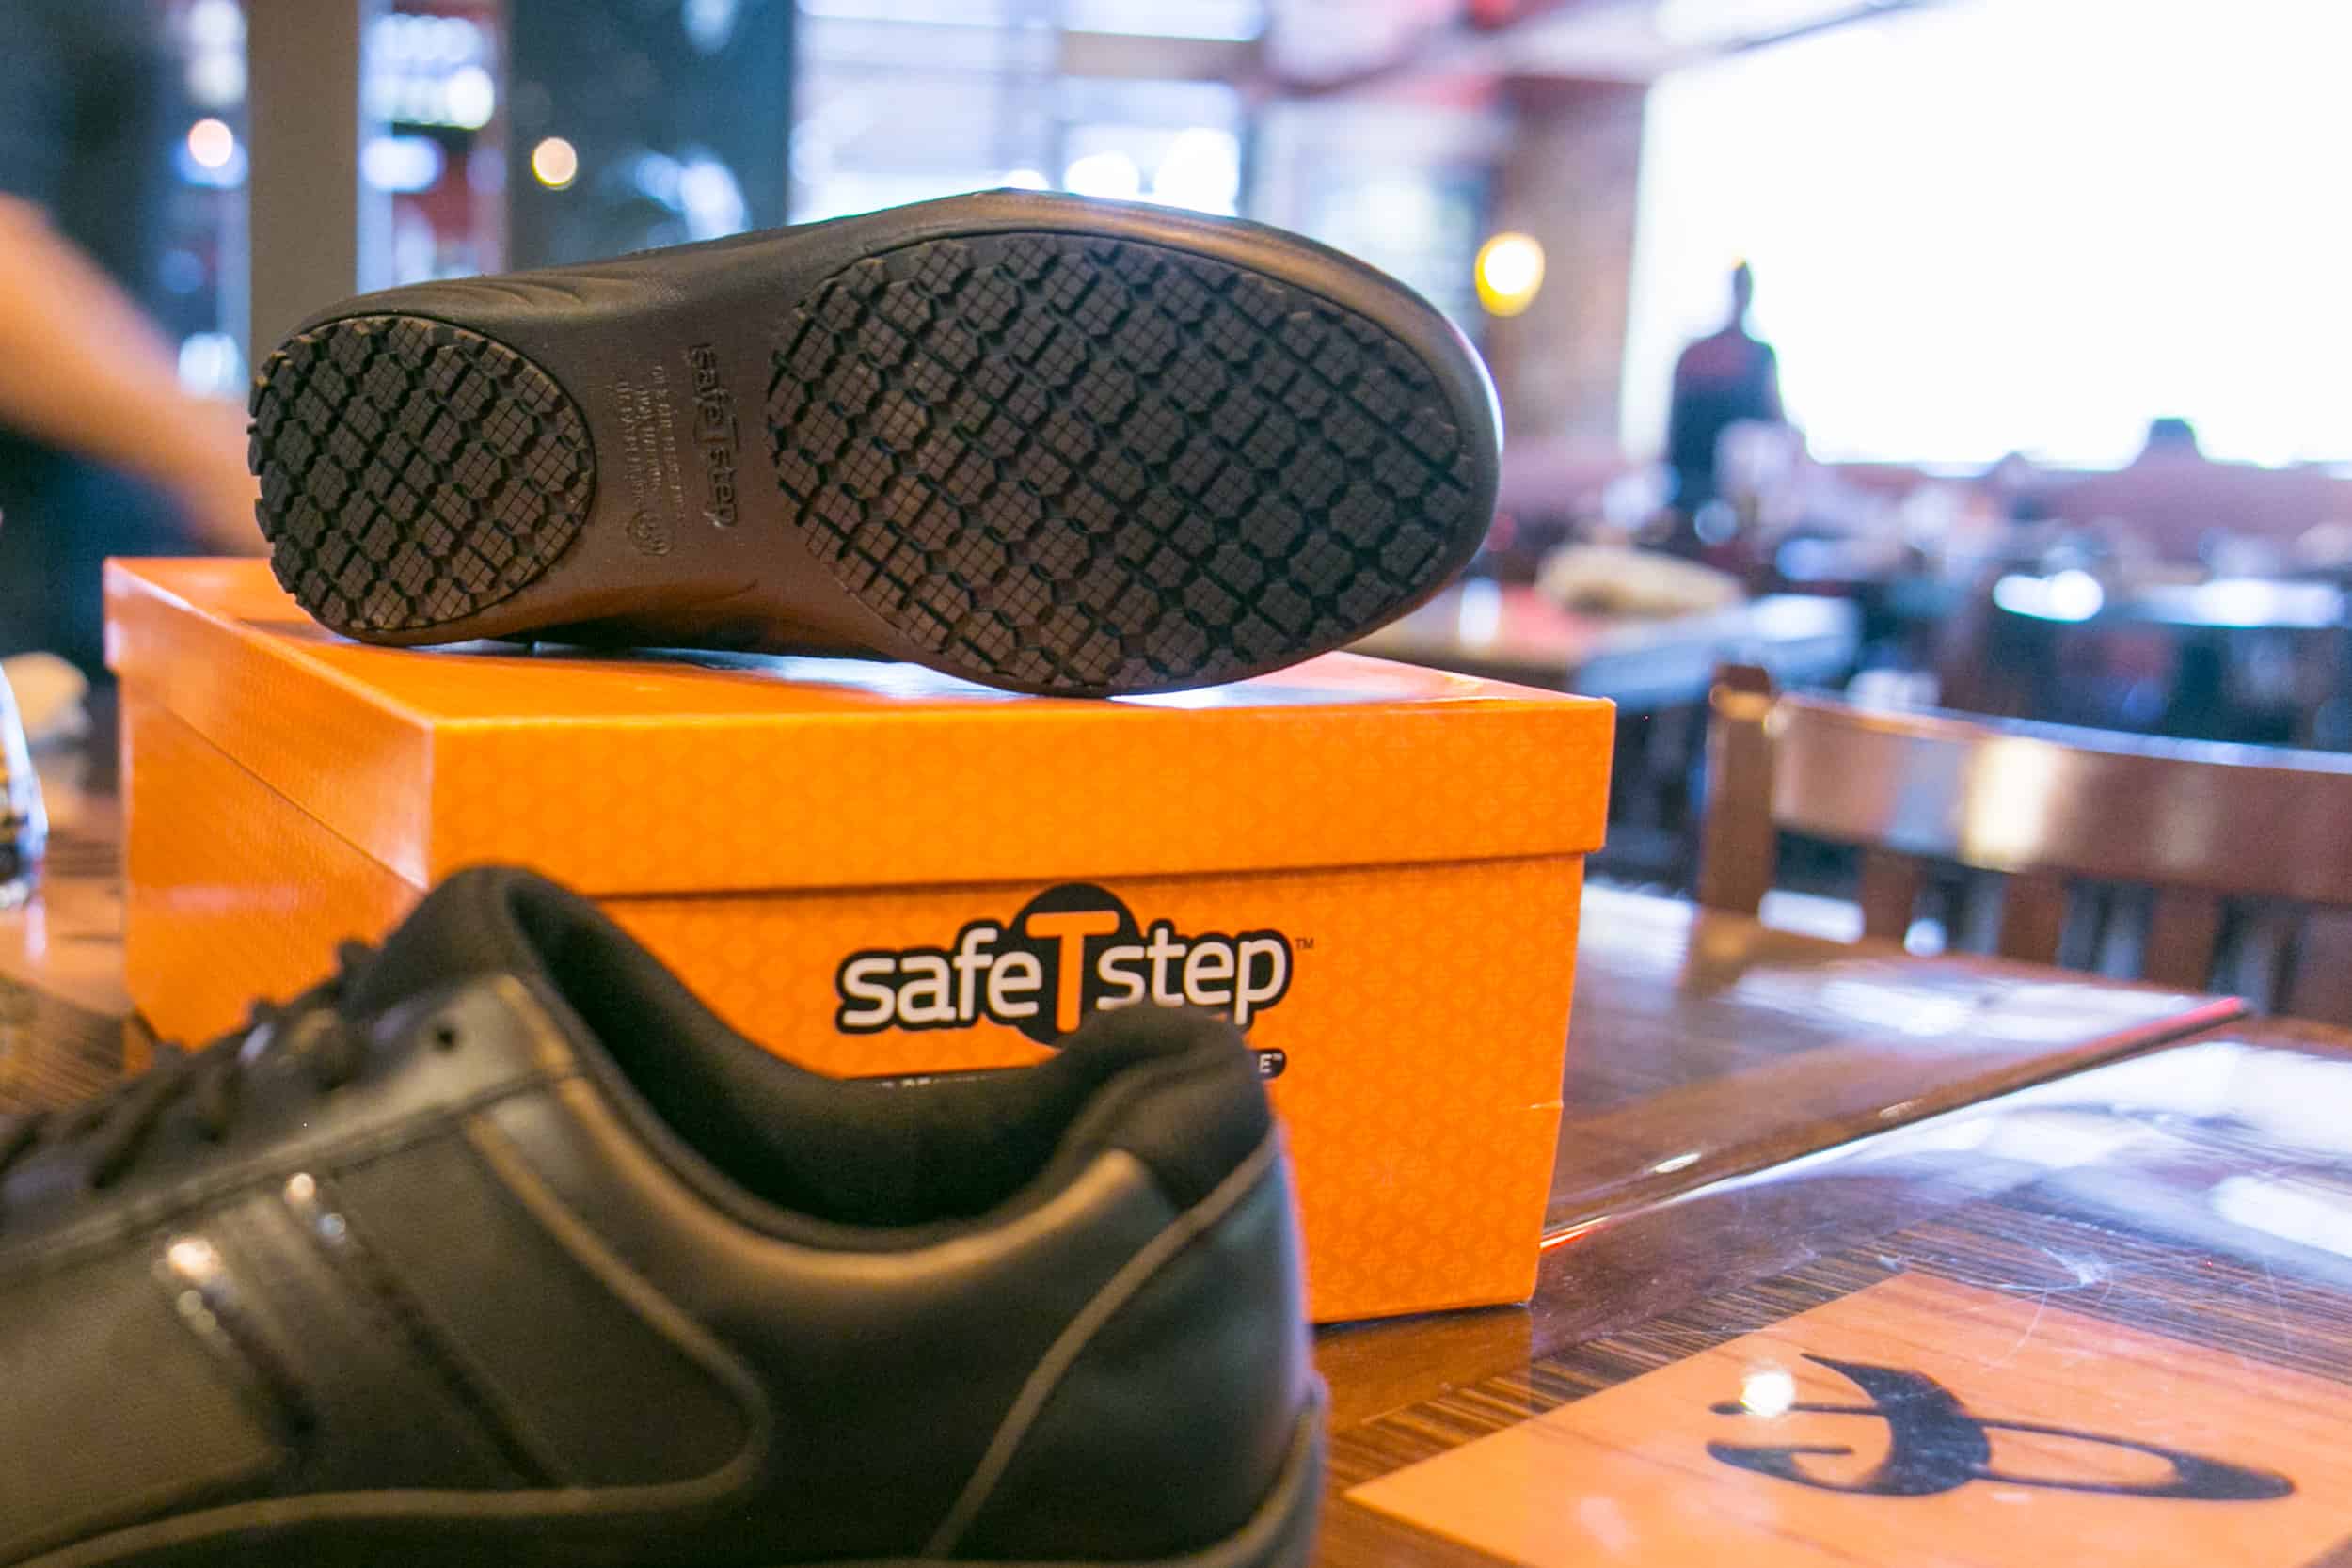 safetstep shoes amazon